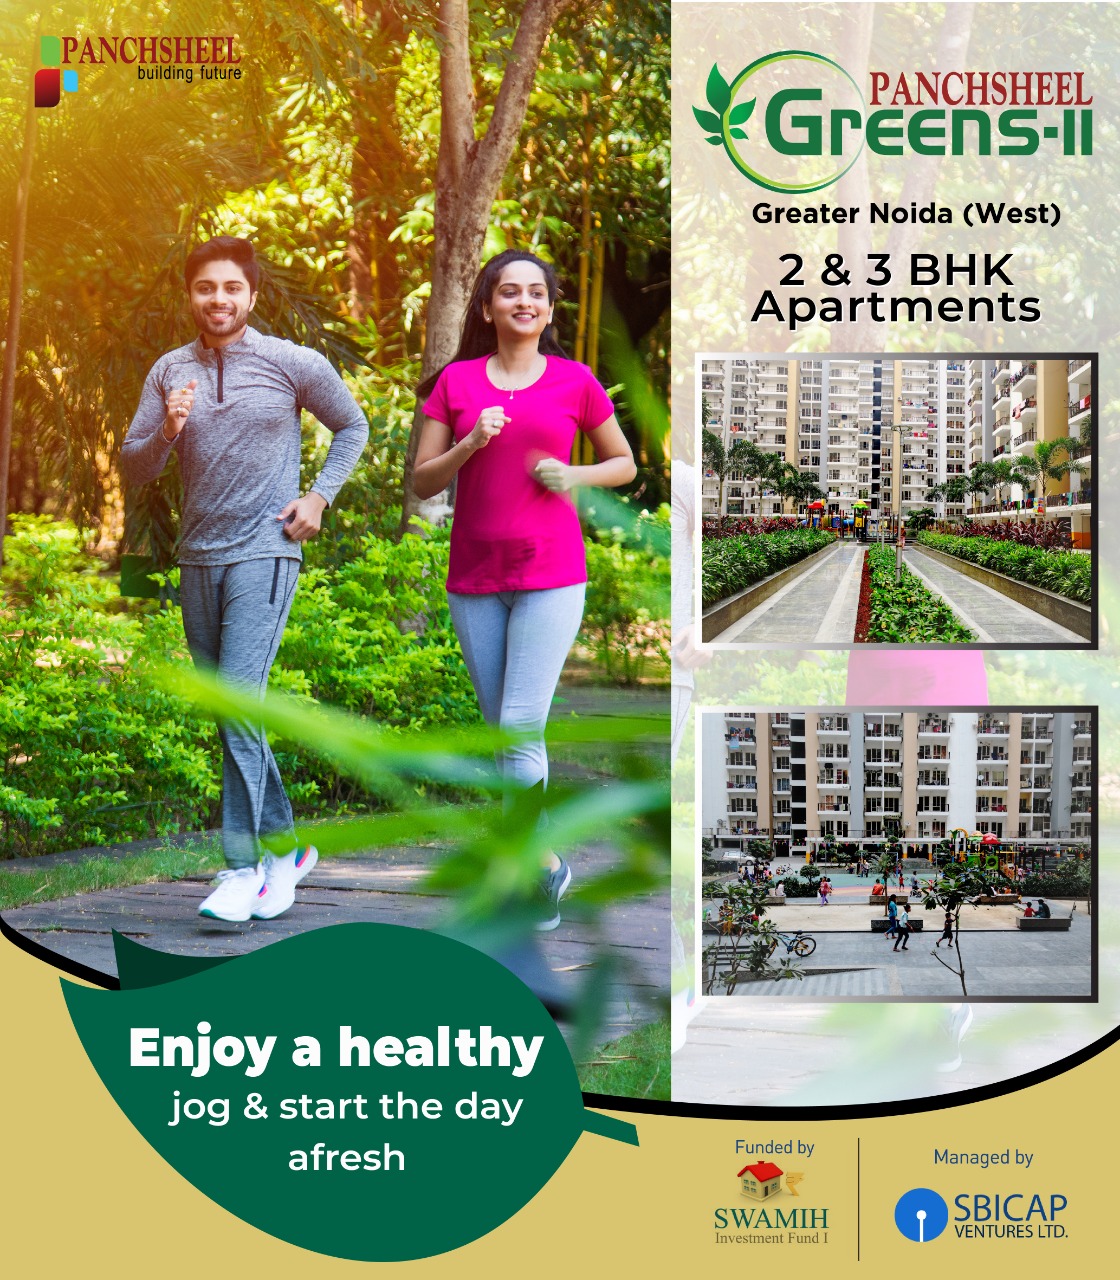 Enjoy a healthy jog & start the day afresh at Panchsheel Greens 2, Greater Noida Update